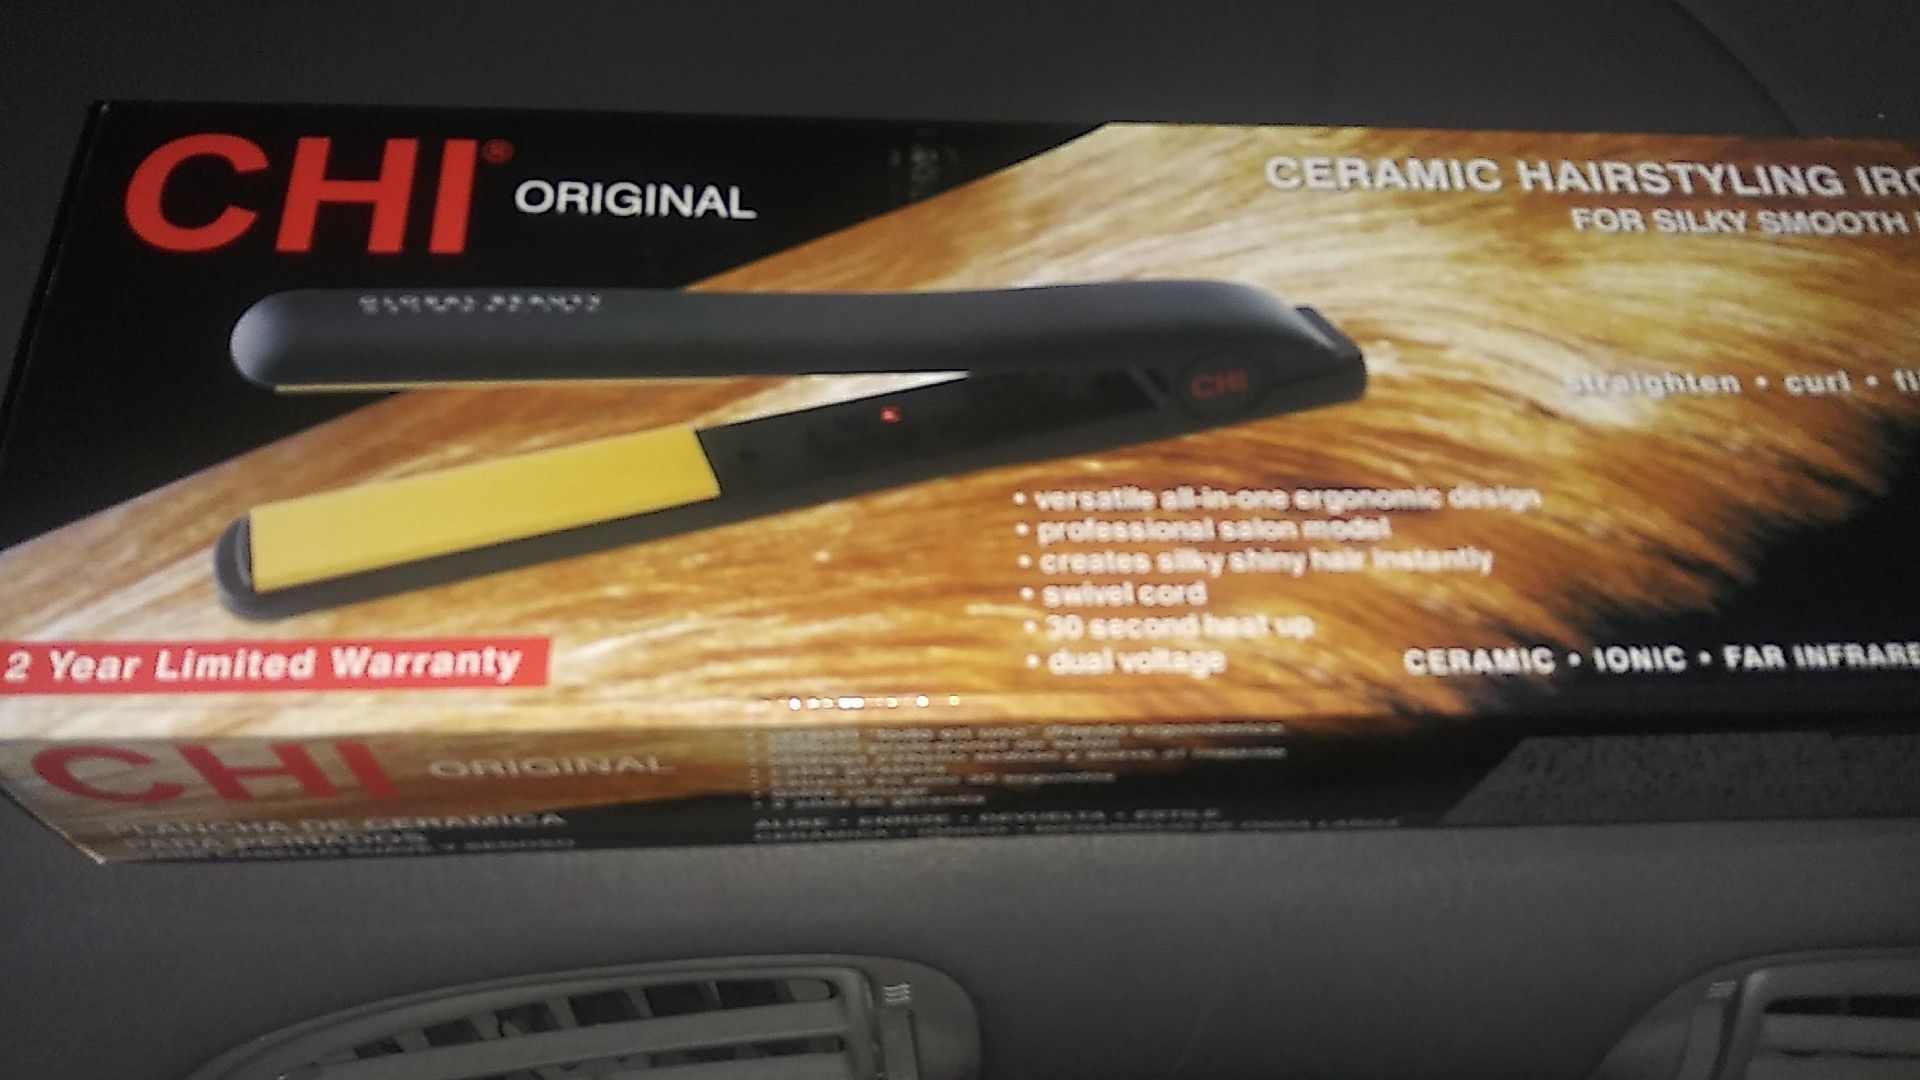 Chi hair straightener brand new in the box